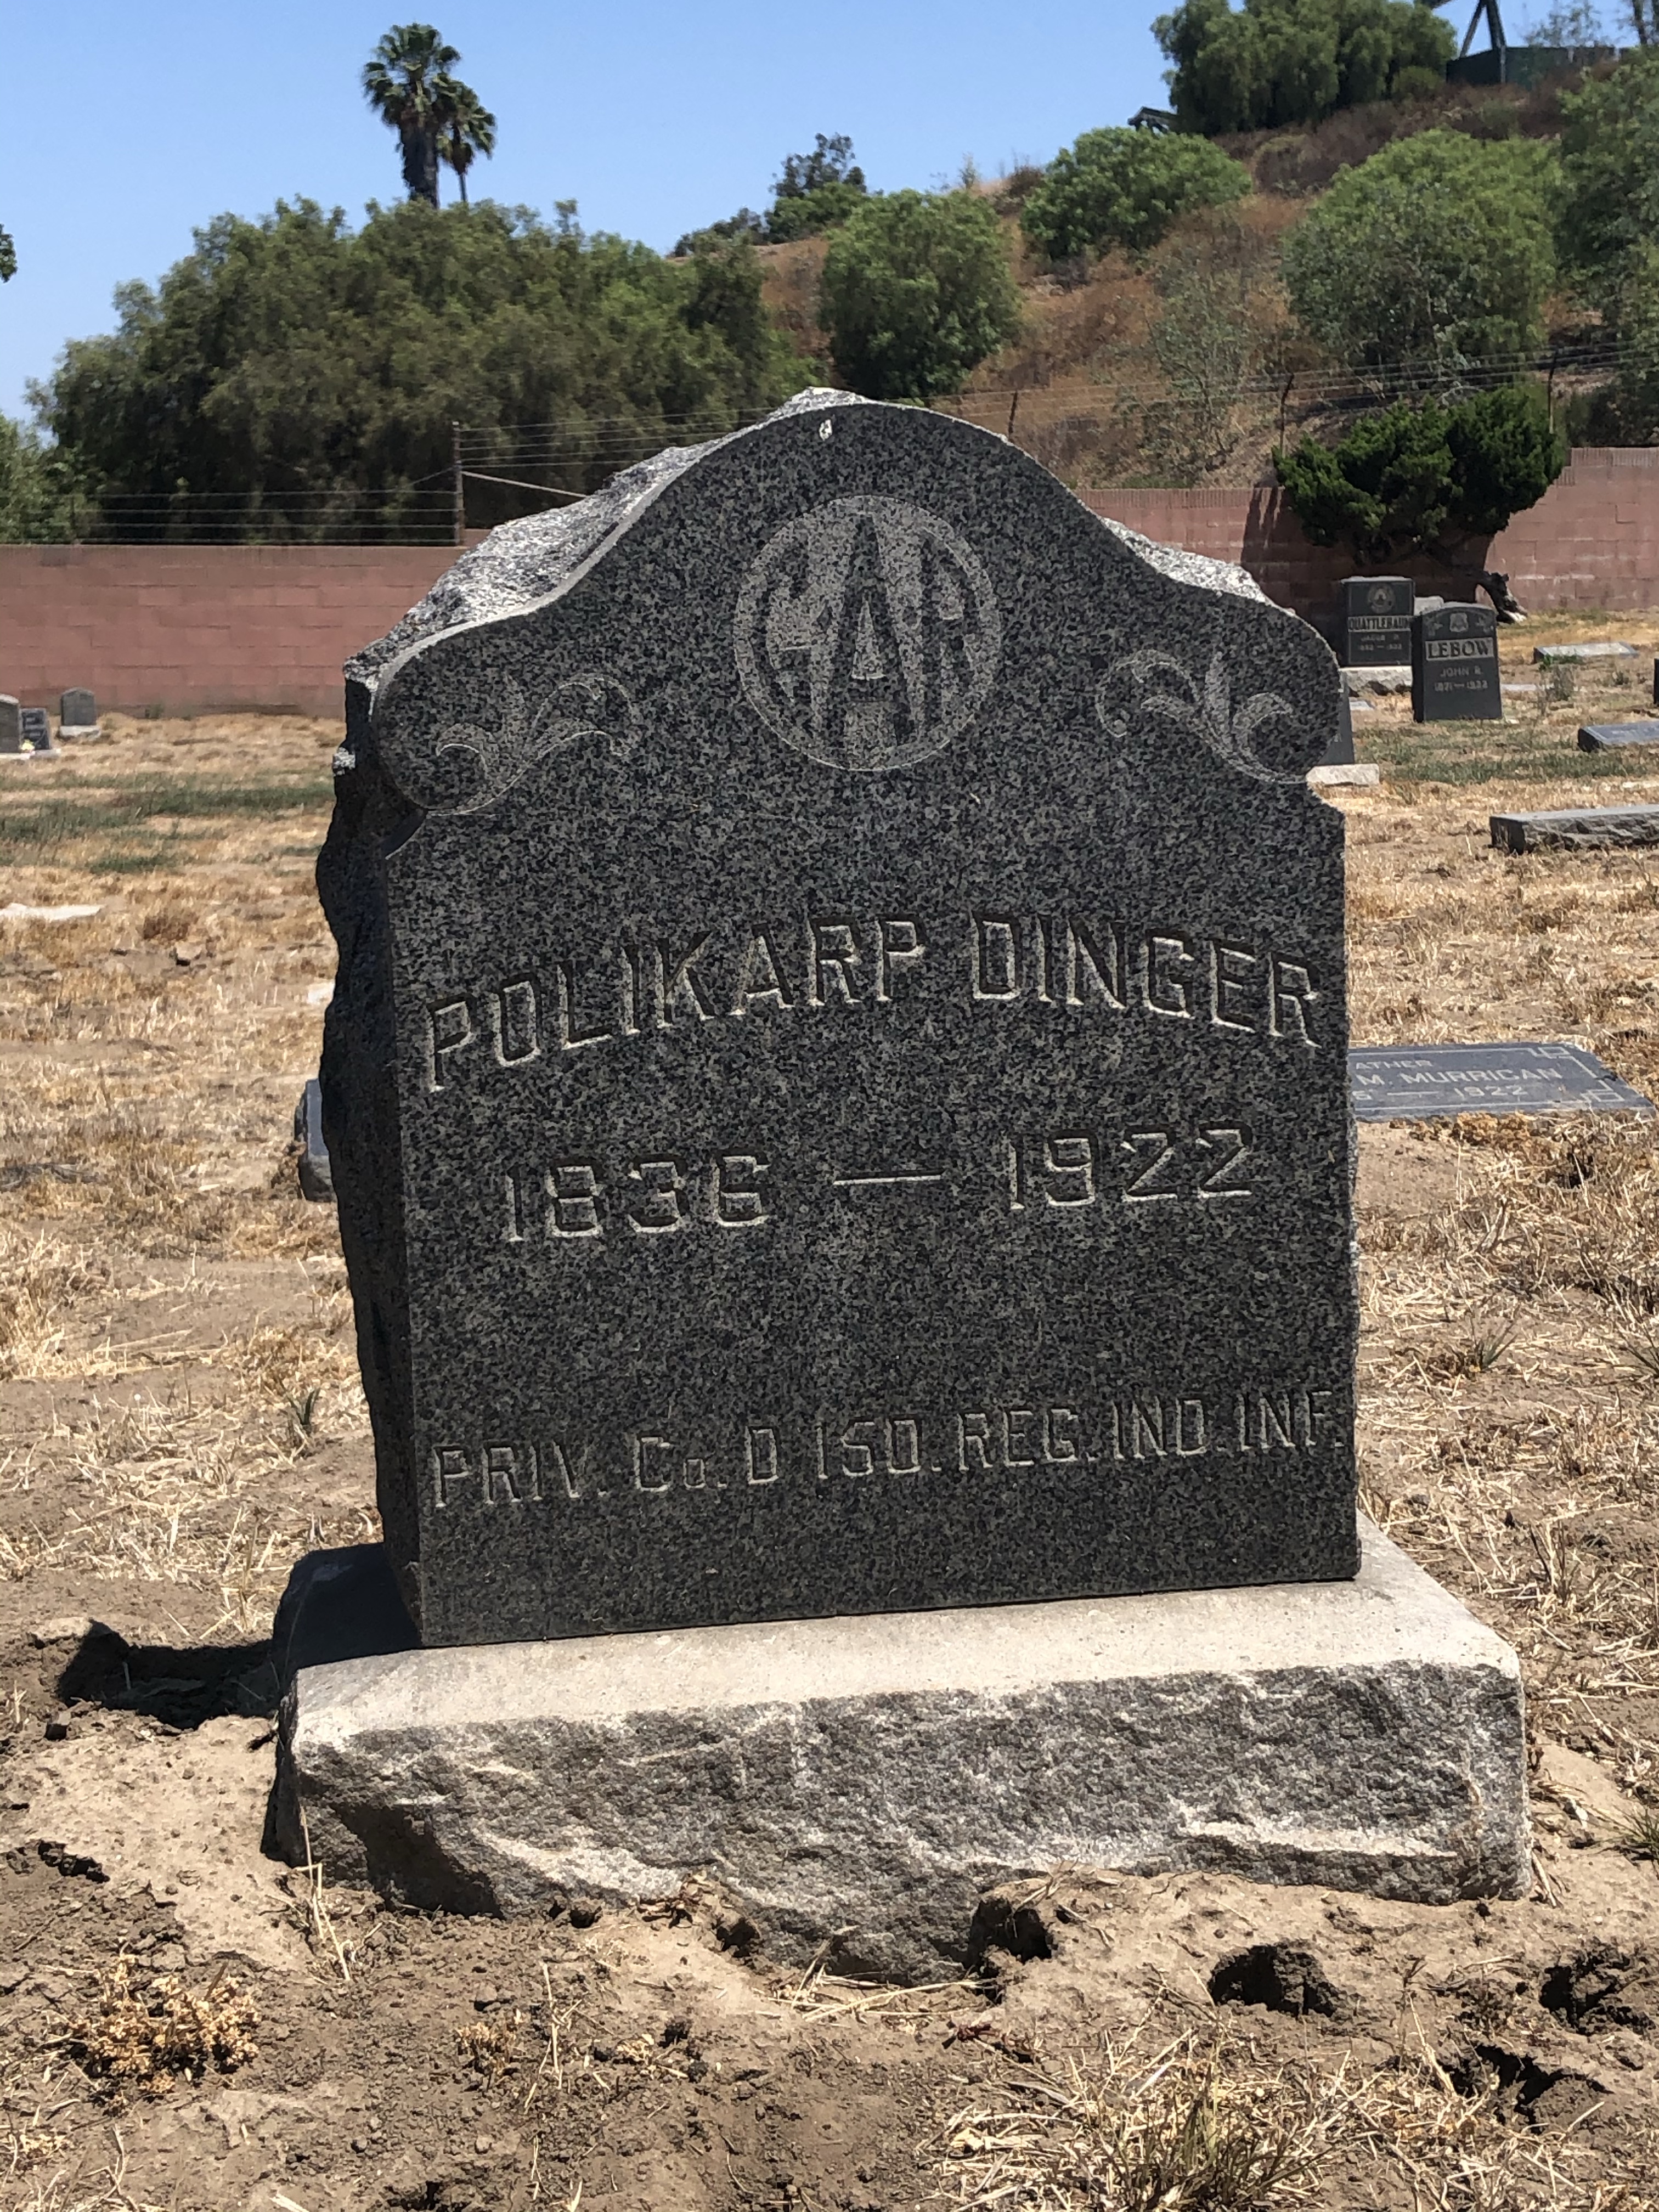 grave of polikarp dinger at sunnyside cemetery in signal hill california